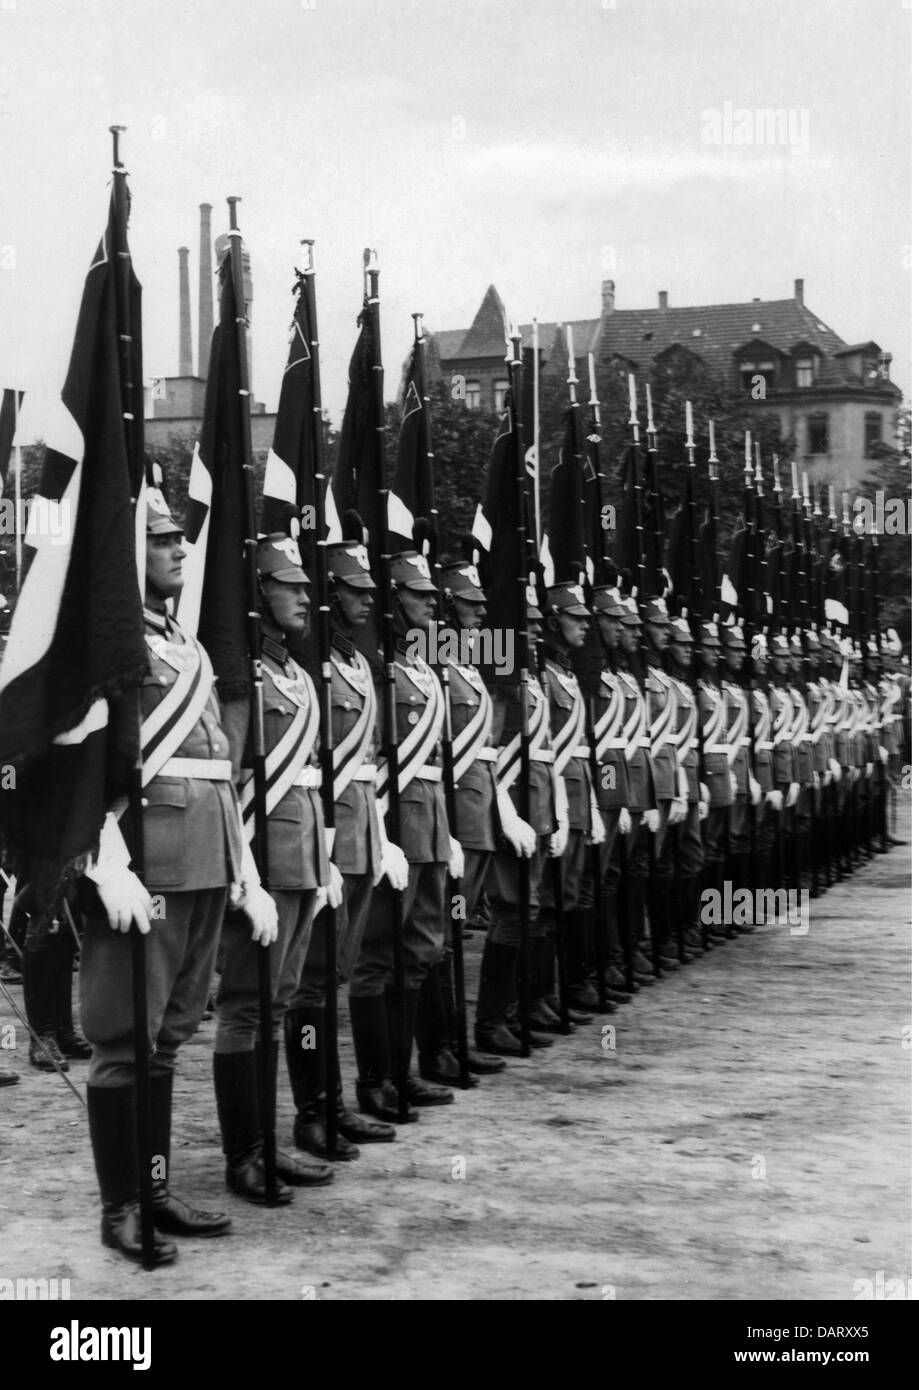 National-socialisme, organisations, police, consécration des drapeaux, Nuremberg, 2ème moitié des années 1930, droits additionnels-Clearences-non disponible Banque D'Images